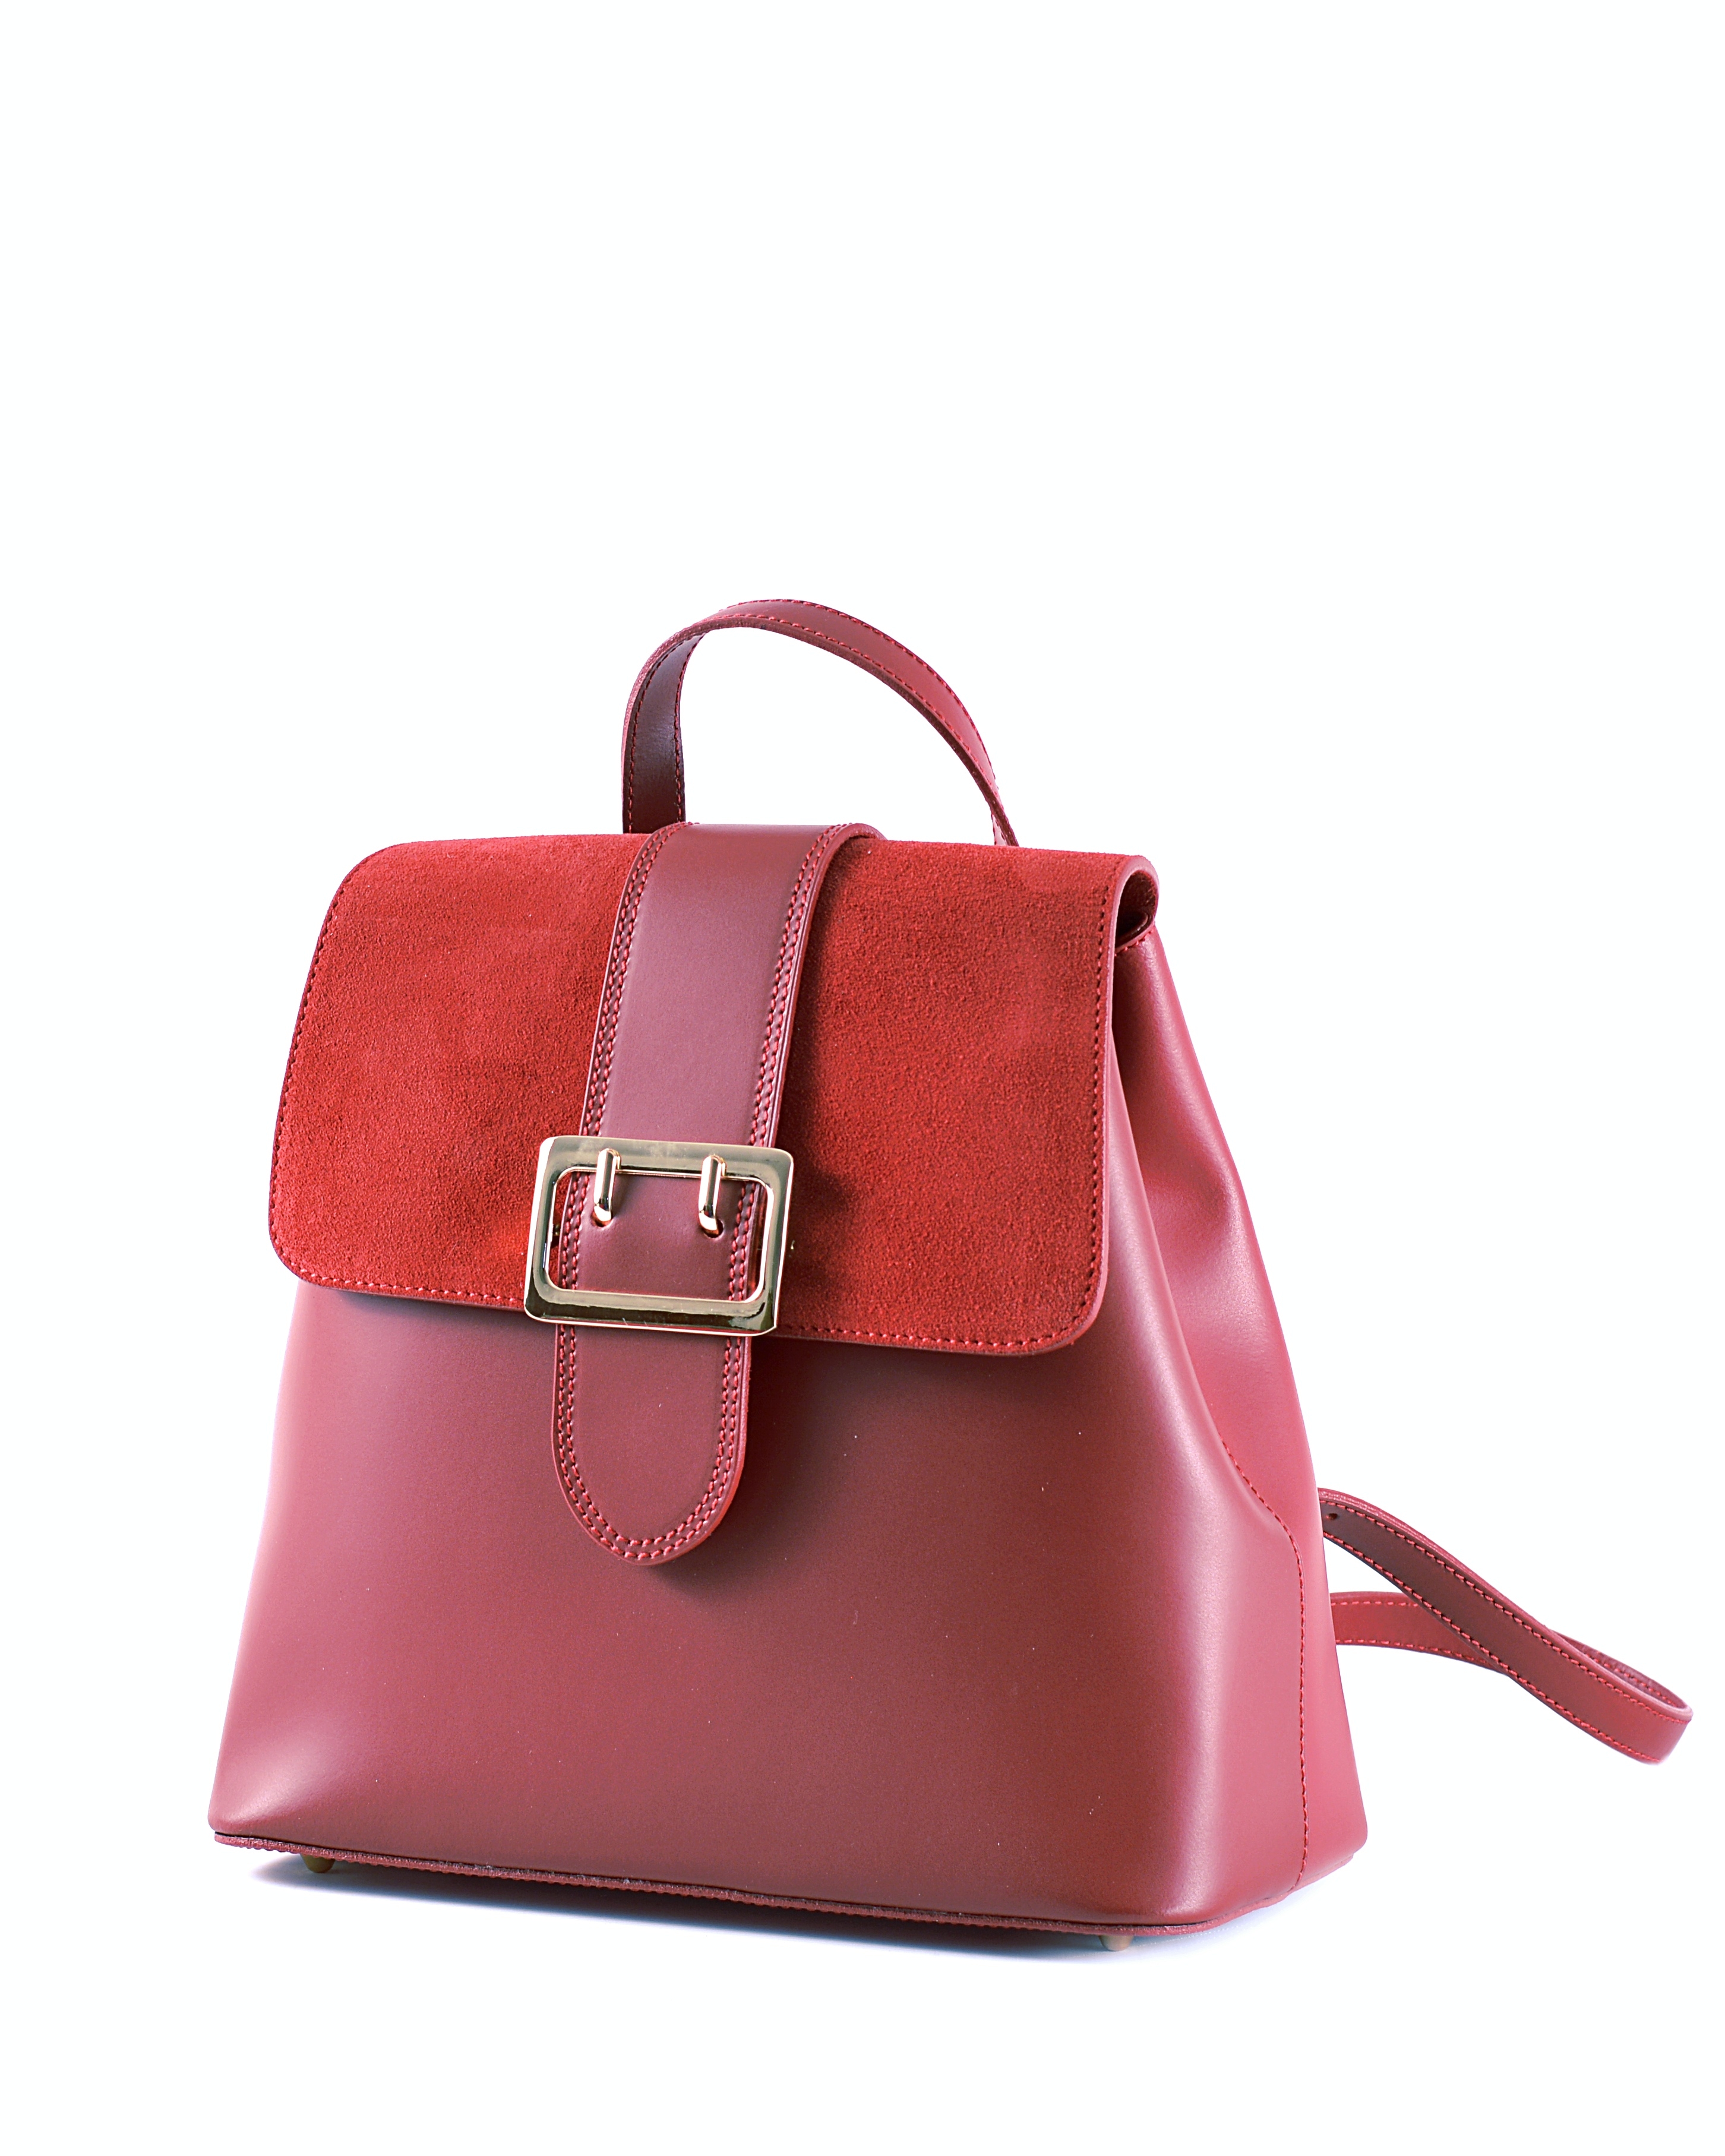 Elegantní dámský kožený batoh s klopnou tmavě červený, 29 x 14 x 28 (777-10CC)